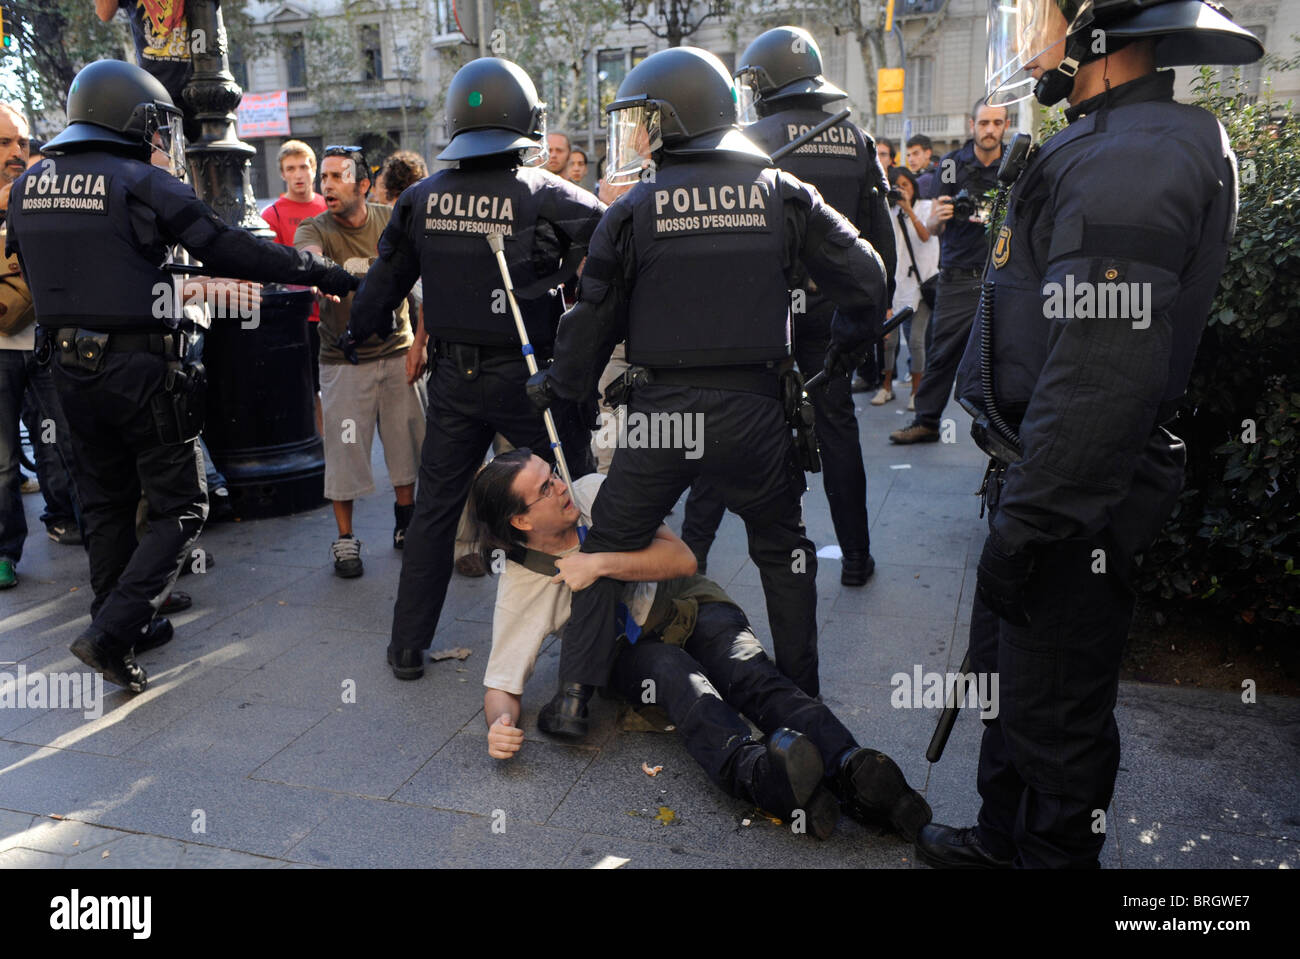 Faccia i manifestanti anti polizia negli scontri presso il centro della città durante lo sciopero generale a Barcellona.Spagna. Foto Stock